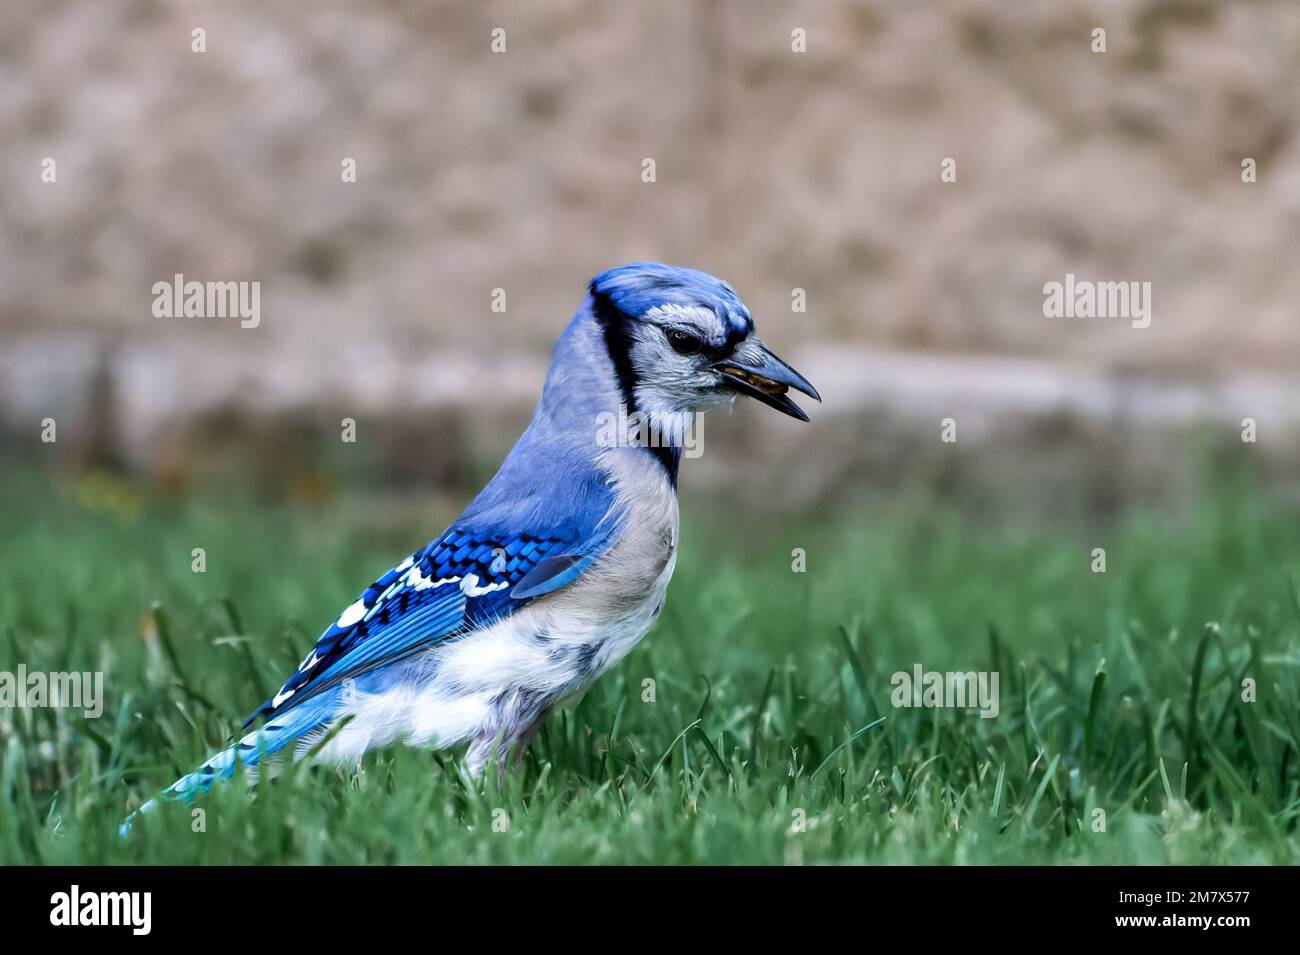 A blue jay bird on green grass. Stock Photo